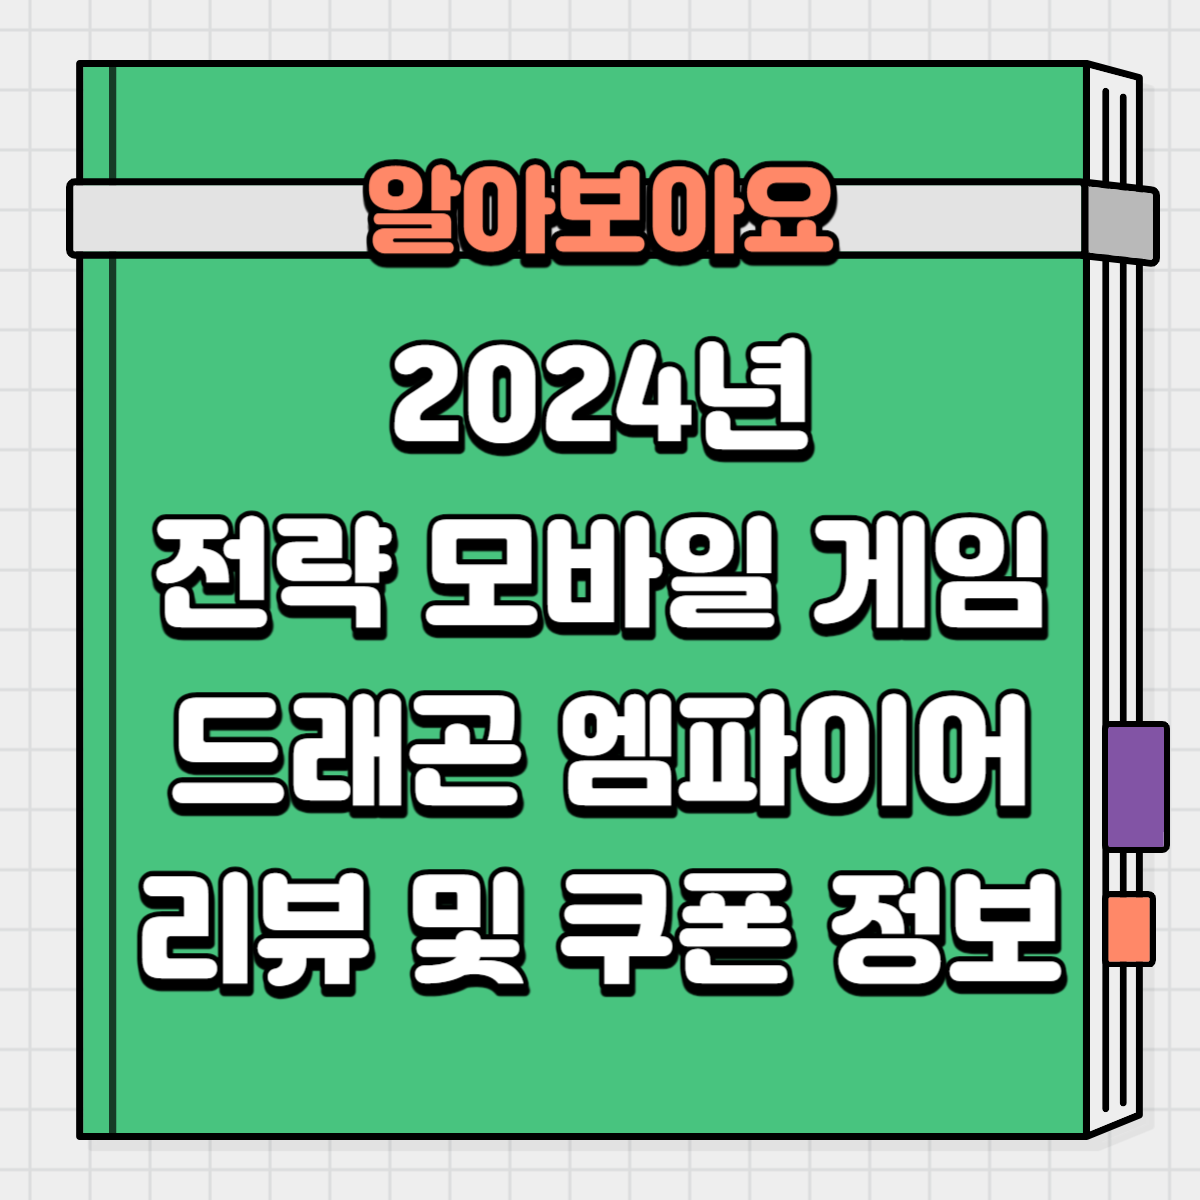 2024년 신작 전략 모바일 게임 드래곤 엠파이어 소개 및 쿠폰 정보 공유